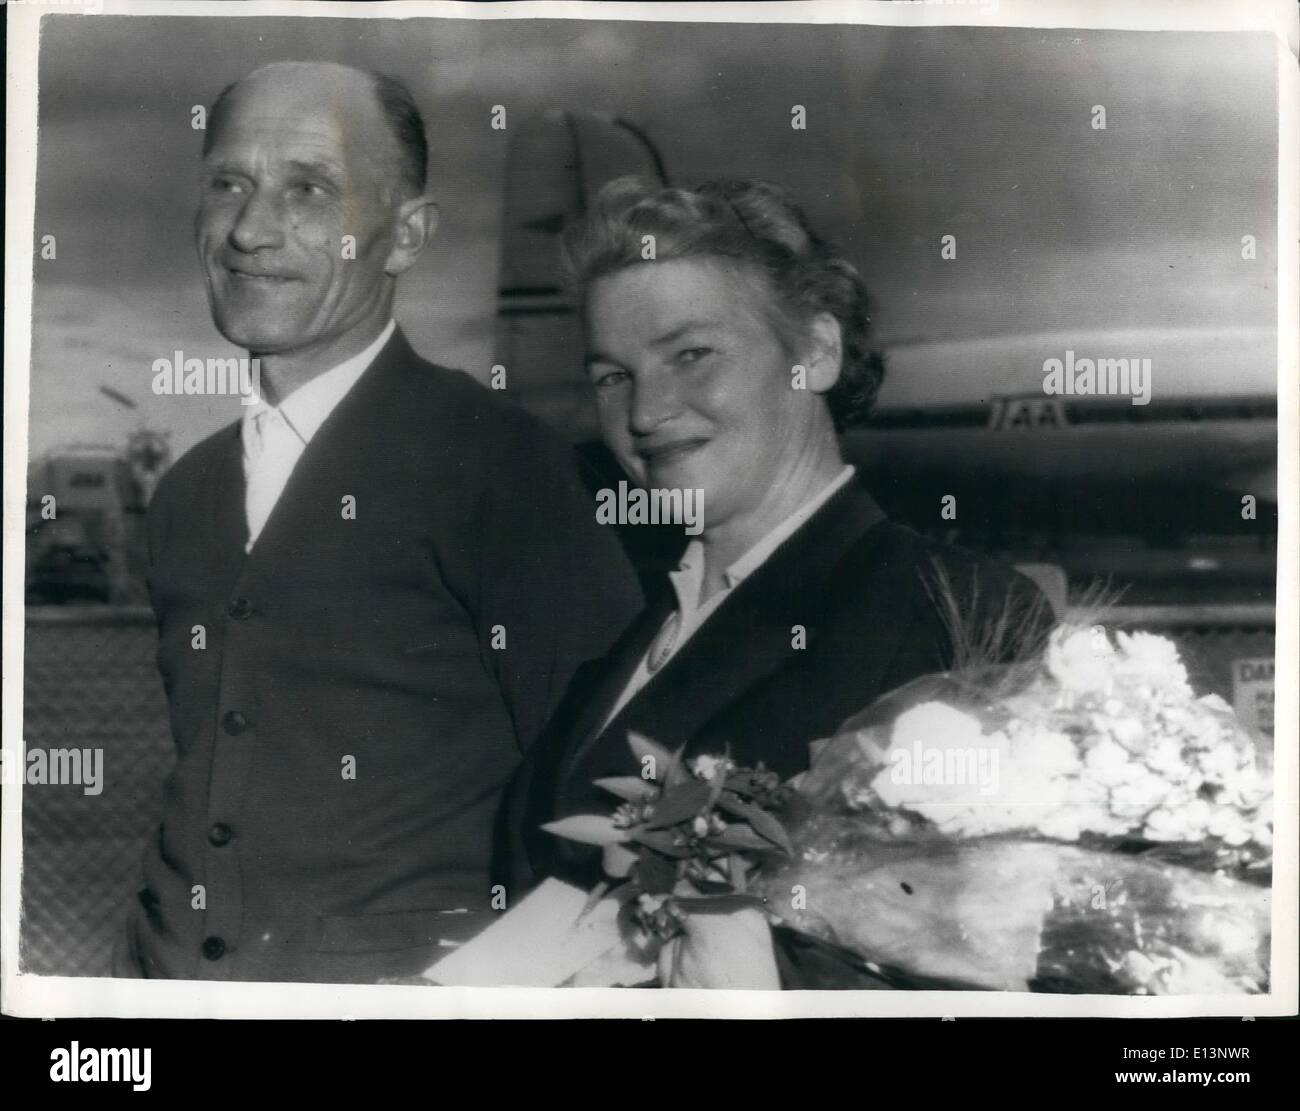 Mar 22, 2012 - "non è mia moglie", dice l'uomo a Reunion: un uomo a aeroporto di Canberra, Australia, abbracciato una donna che aveva volato dalla Polonia per ricongiungersi a lui dopo 21 anni. Poi ha stordito un gruppo di poli di felice che ha atteso per accogliere la donna con fiori annunciando: "Egli non è mia moglie''. L'uomo, Peter Pasziewska, di Ainslie, Canberra, ultimo visto sua moglie, Elena, in Polonia nel 1939. Paszniewska e sua moglie si è sposato nel 1930, ma fu catturato dai tedeschi e inviato in un campo di prigionia nel 1939 Foto Stock